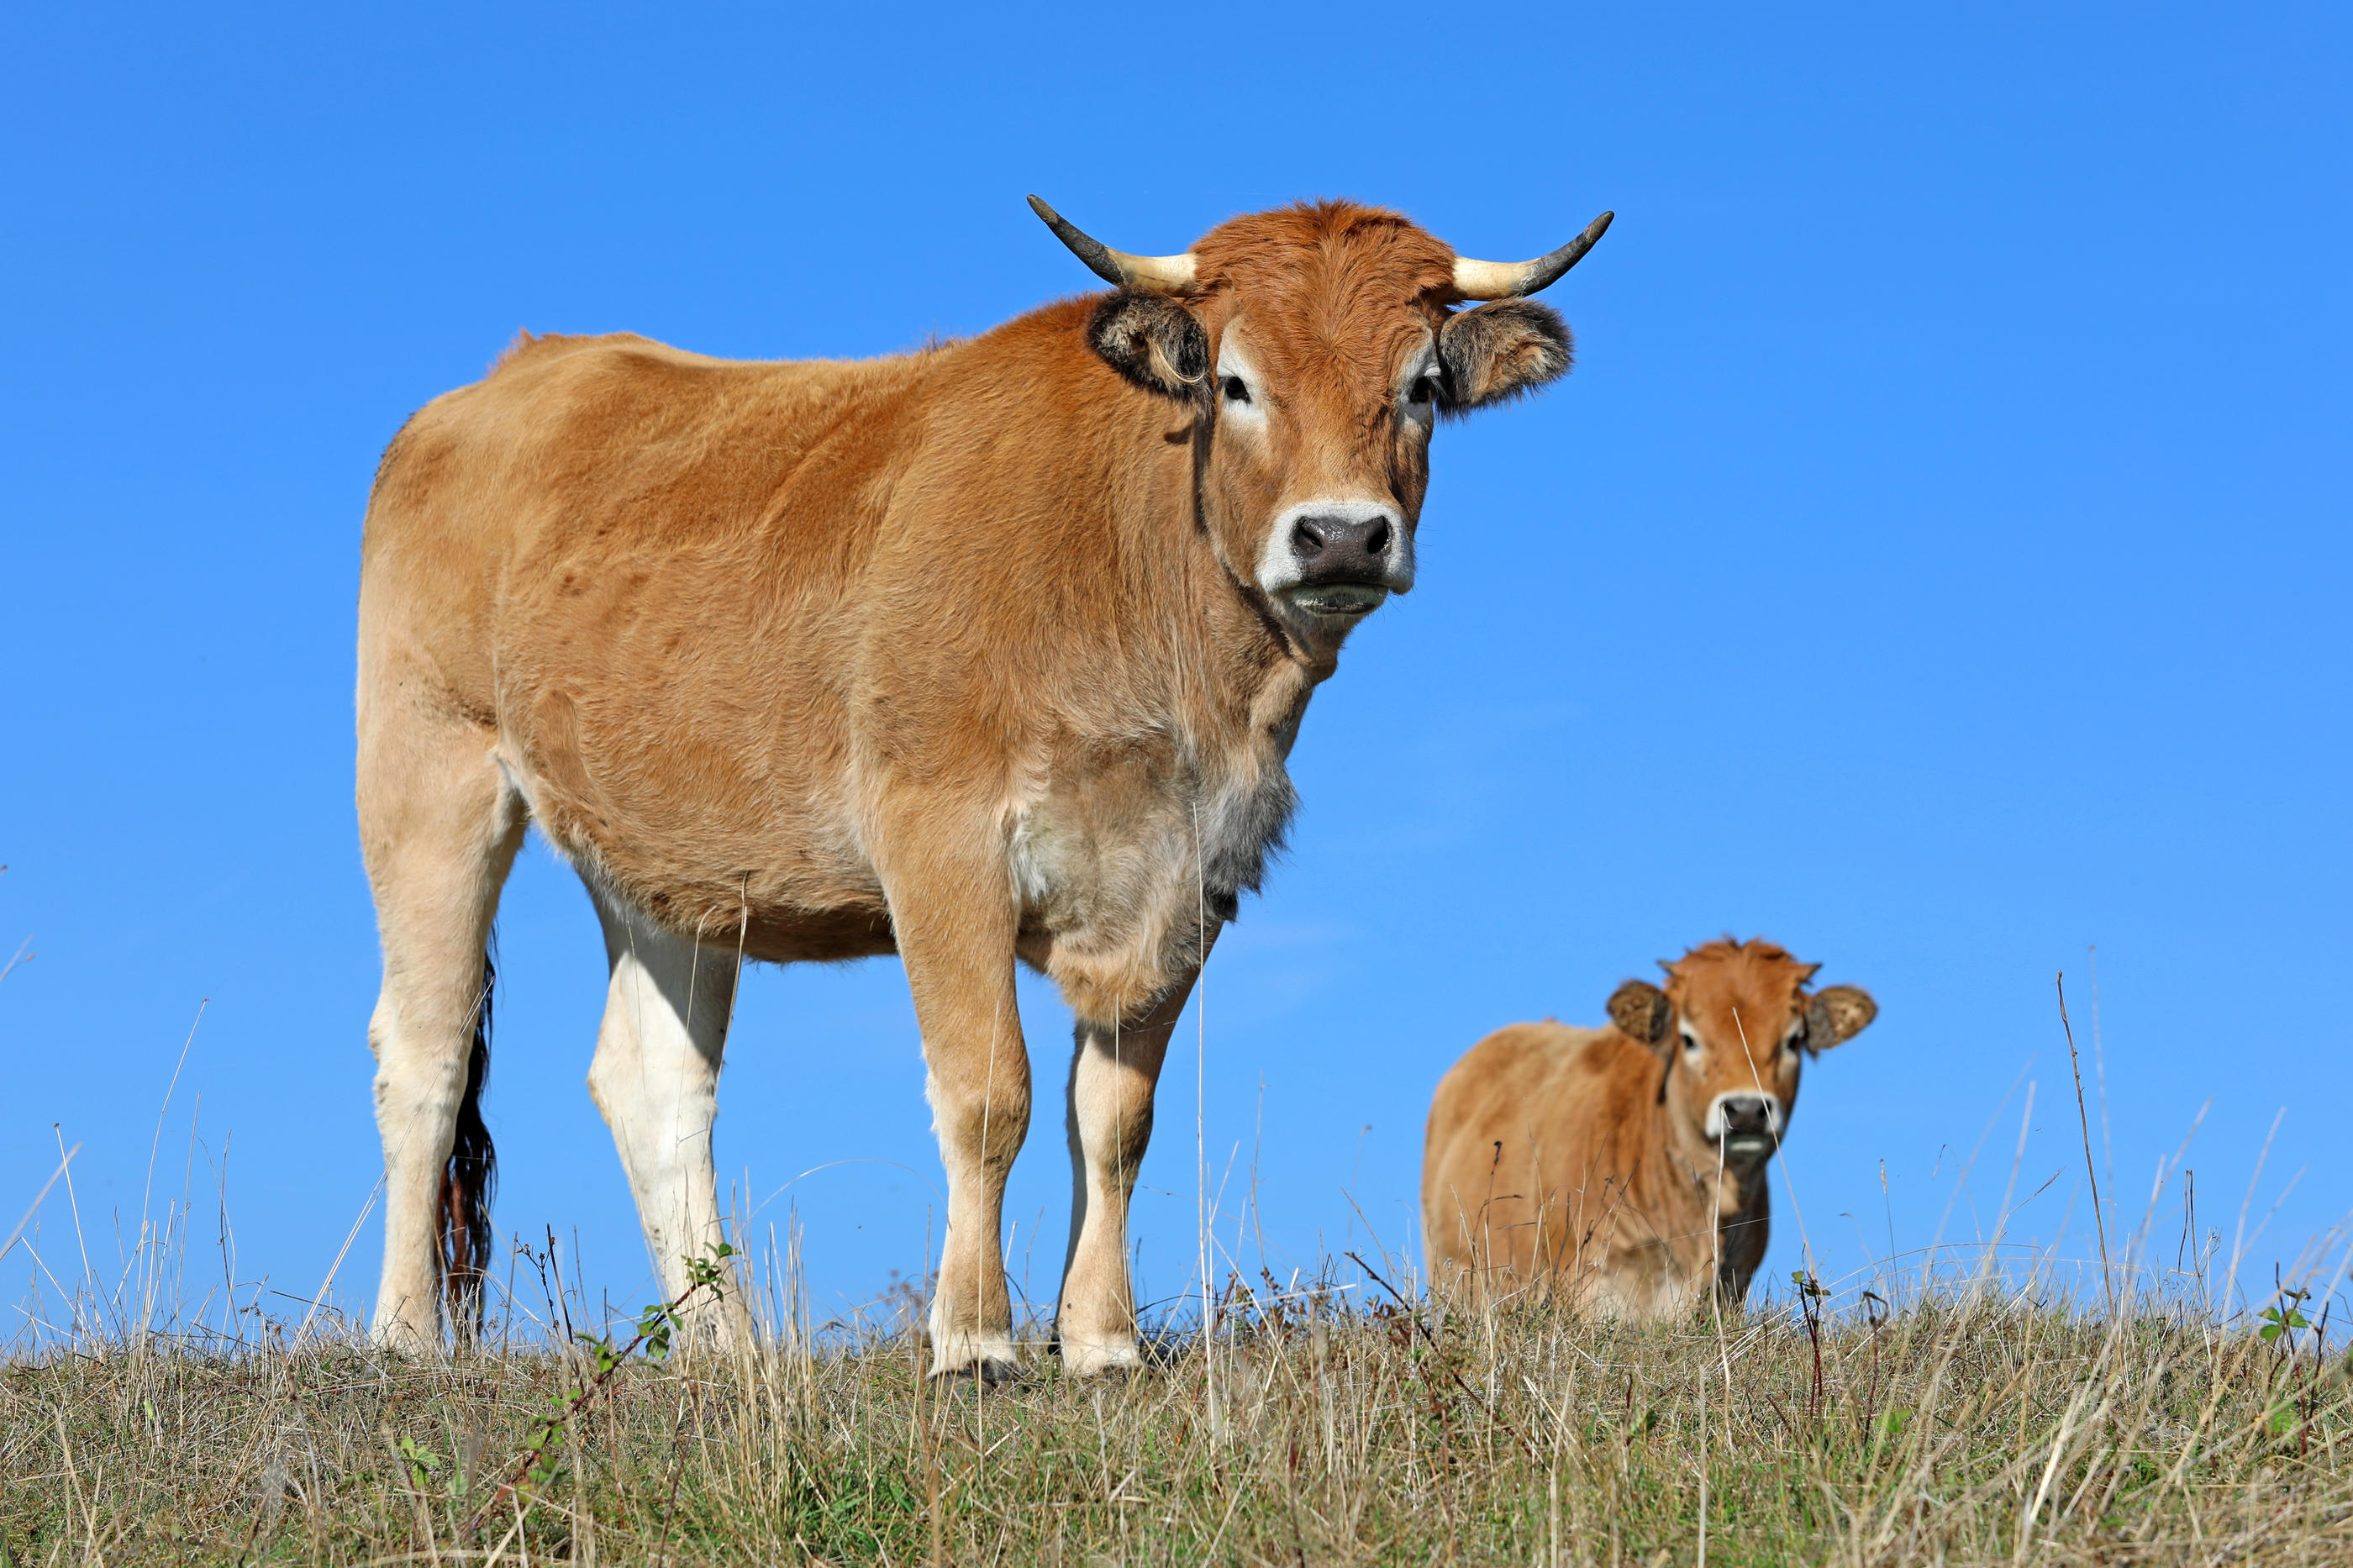 Le foin qui nourrit les vaches Aubrac de Galdric Sola se fait rare dans les pâturages sur les hauteurs de Prades. (Illustration) Istock/Sablin